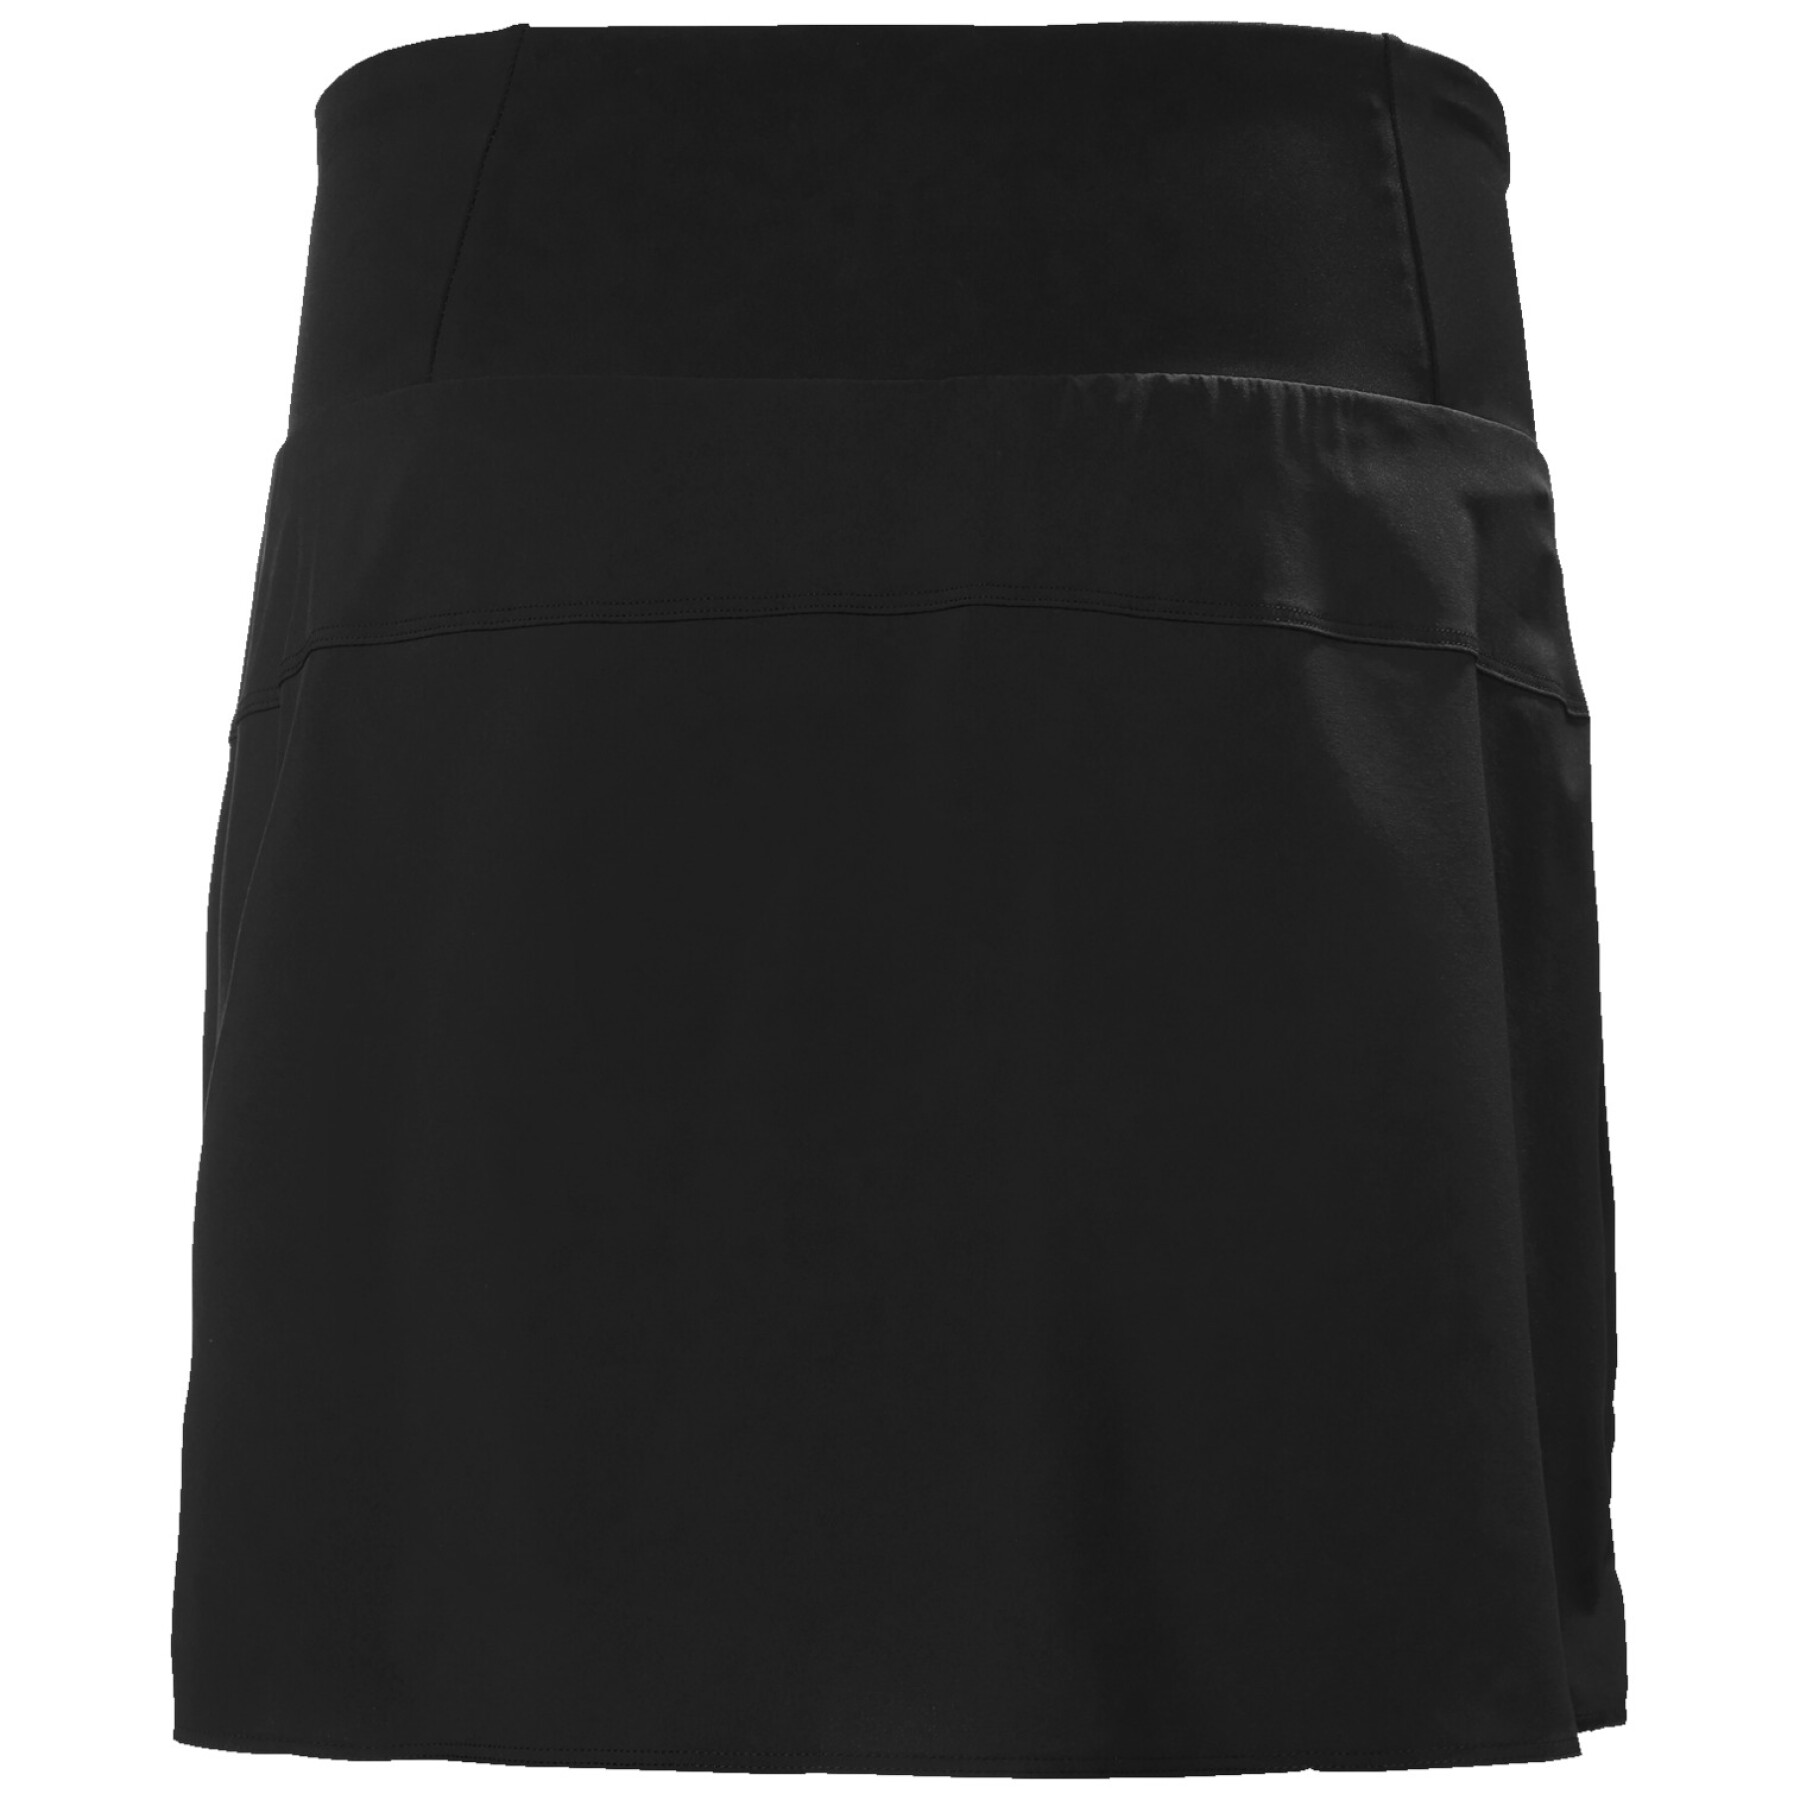 Women's skirt-short Helly Hansen Rask